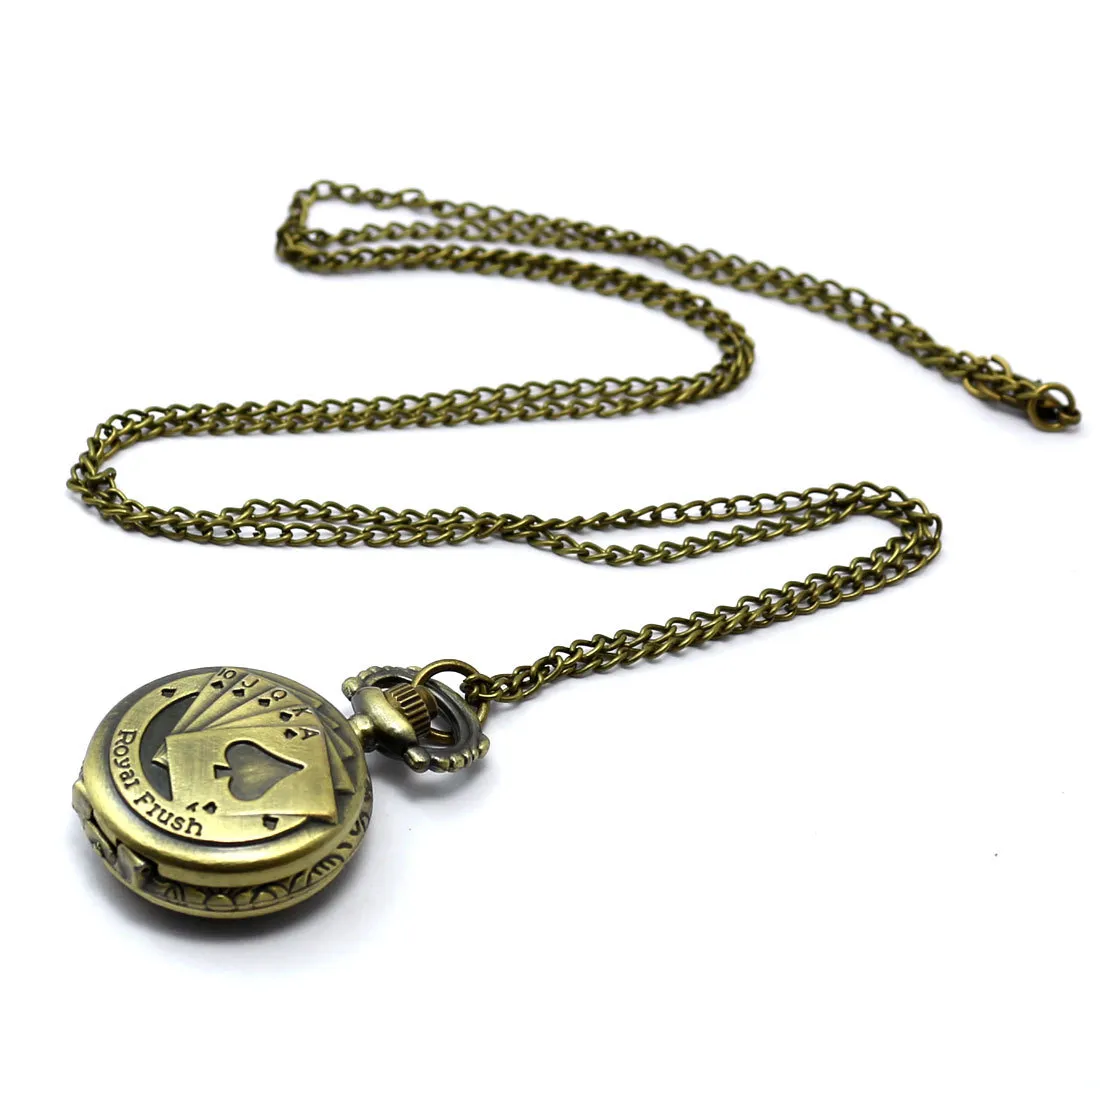 Il quarzo all'ingrosso guarda le vigilanze di tasca PW054 del bronzo della catena della collana delle vigilanze